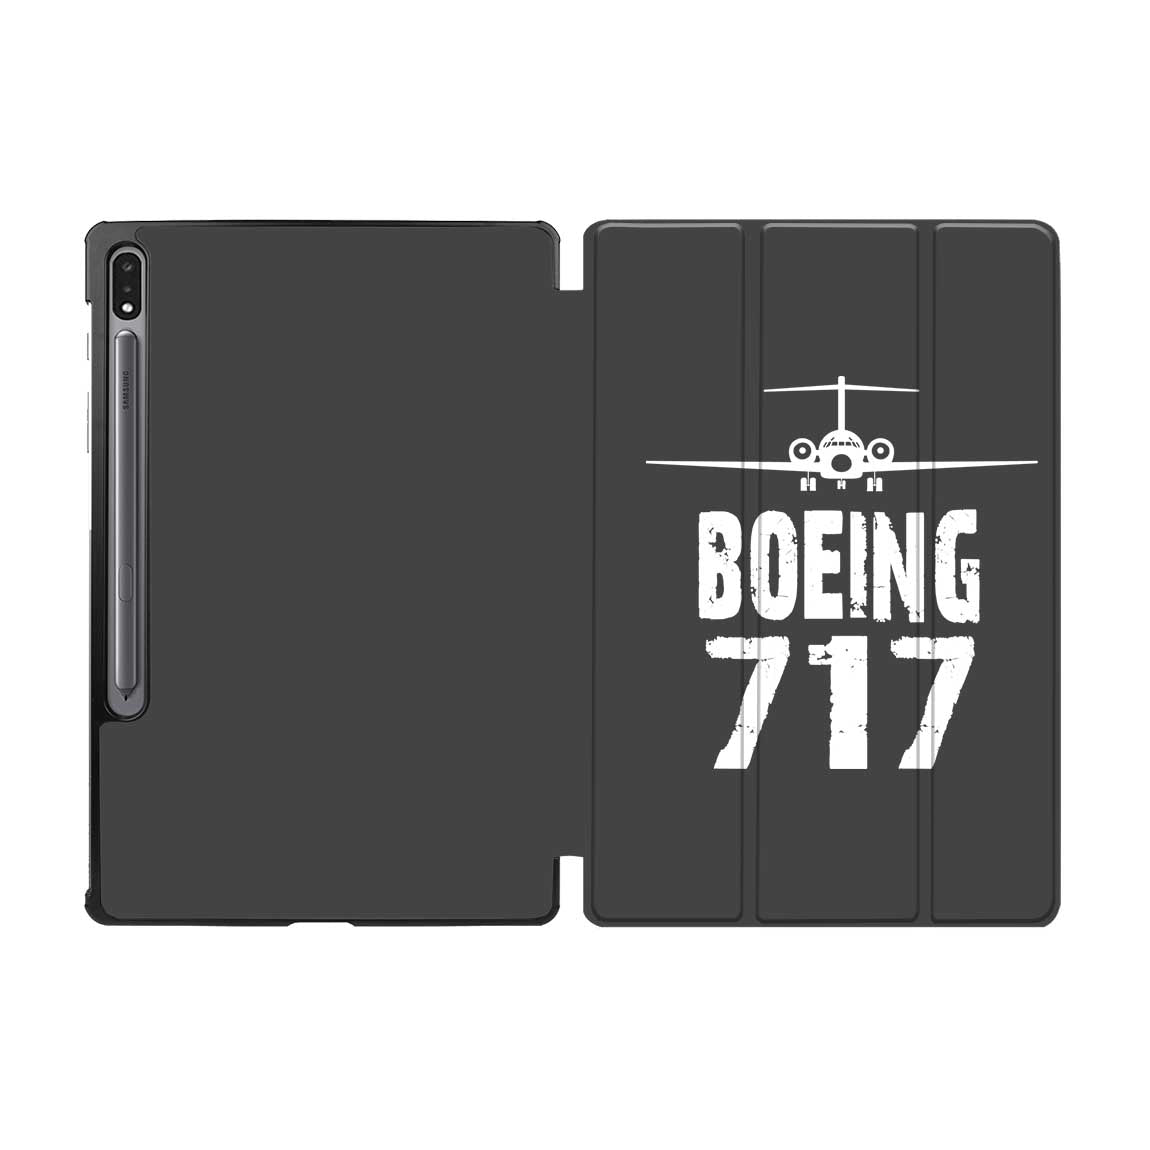 Boeing 717 & Plane Designed Samsung Tablet Cases